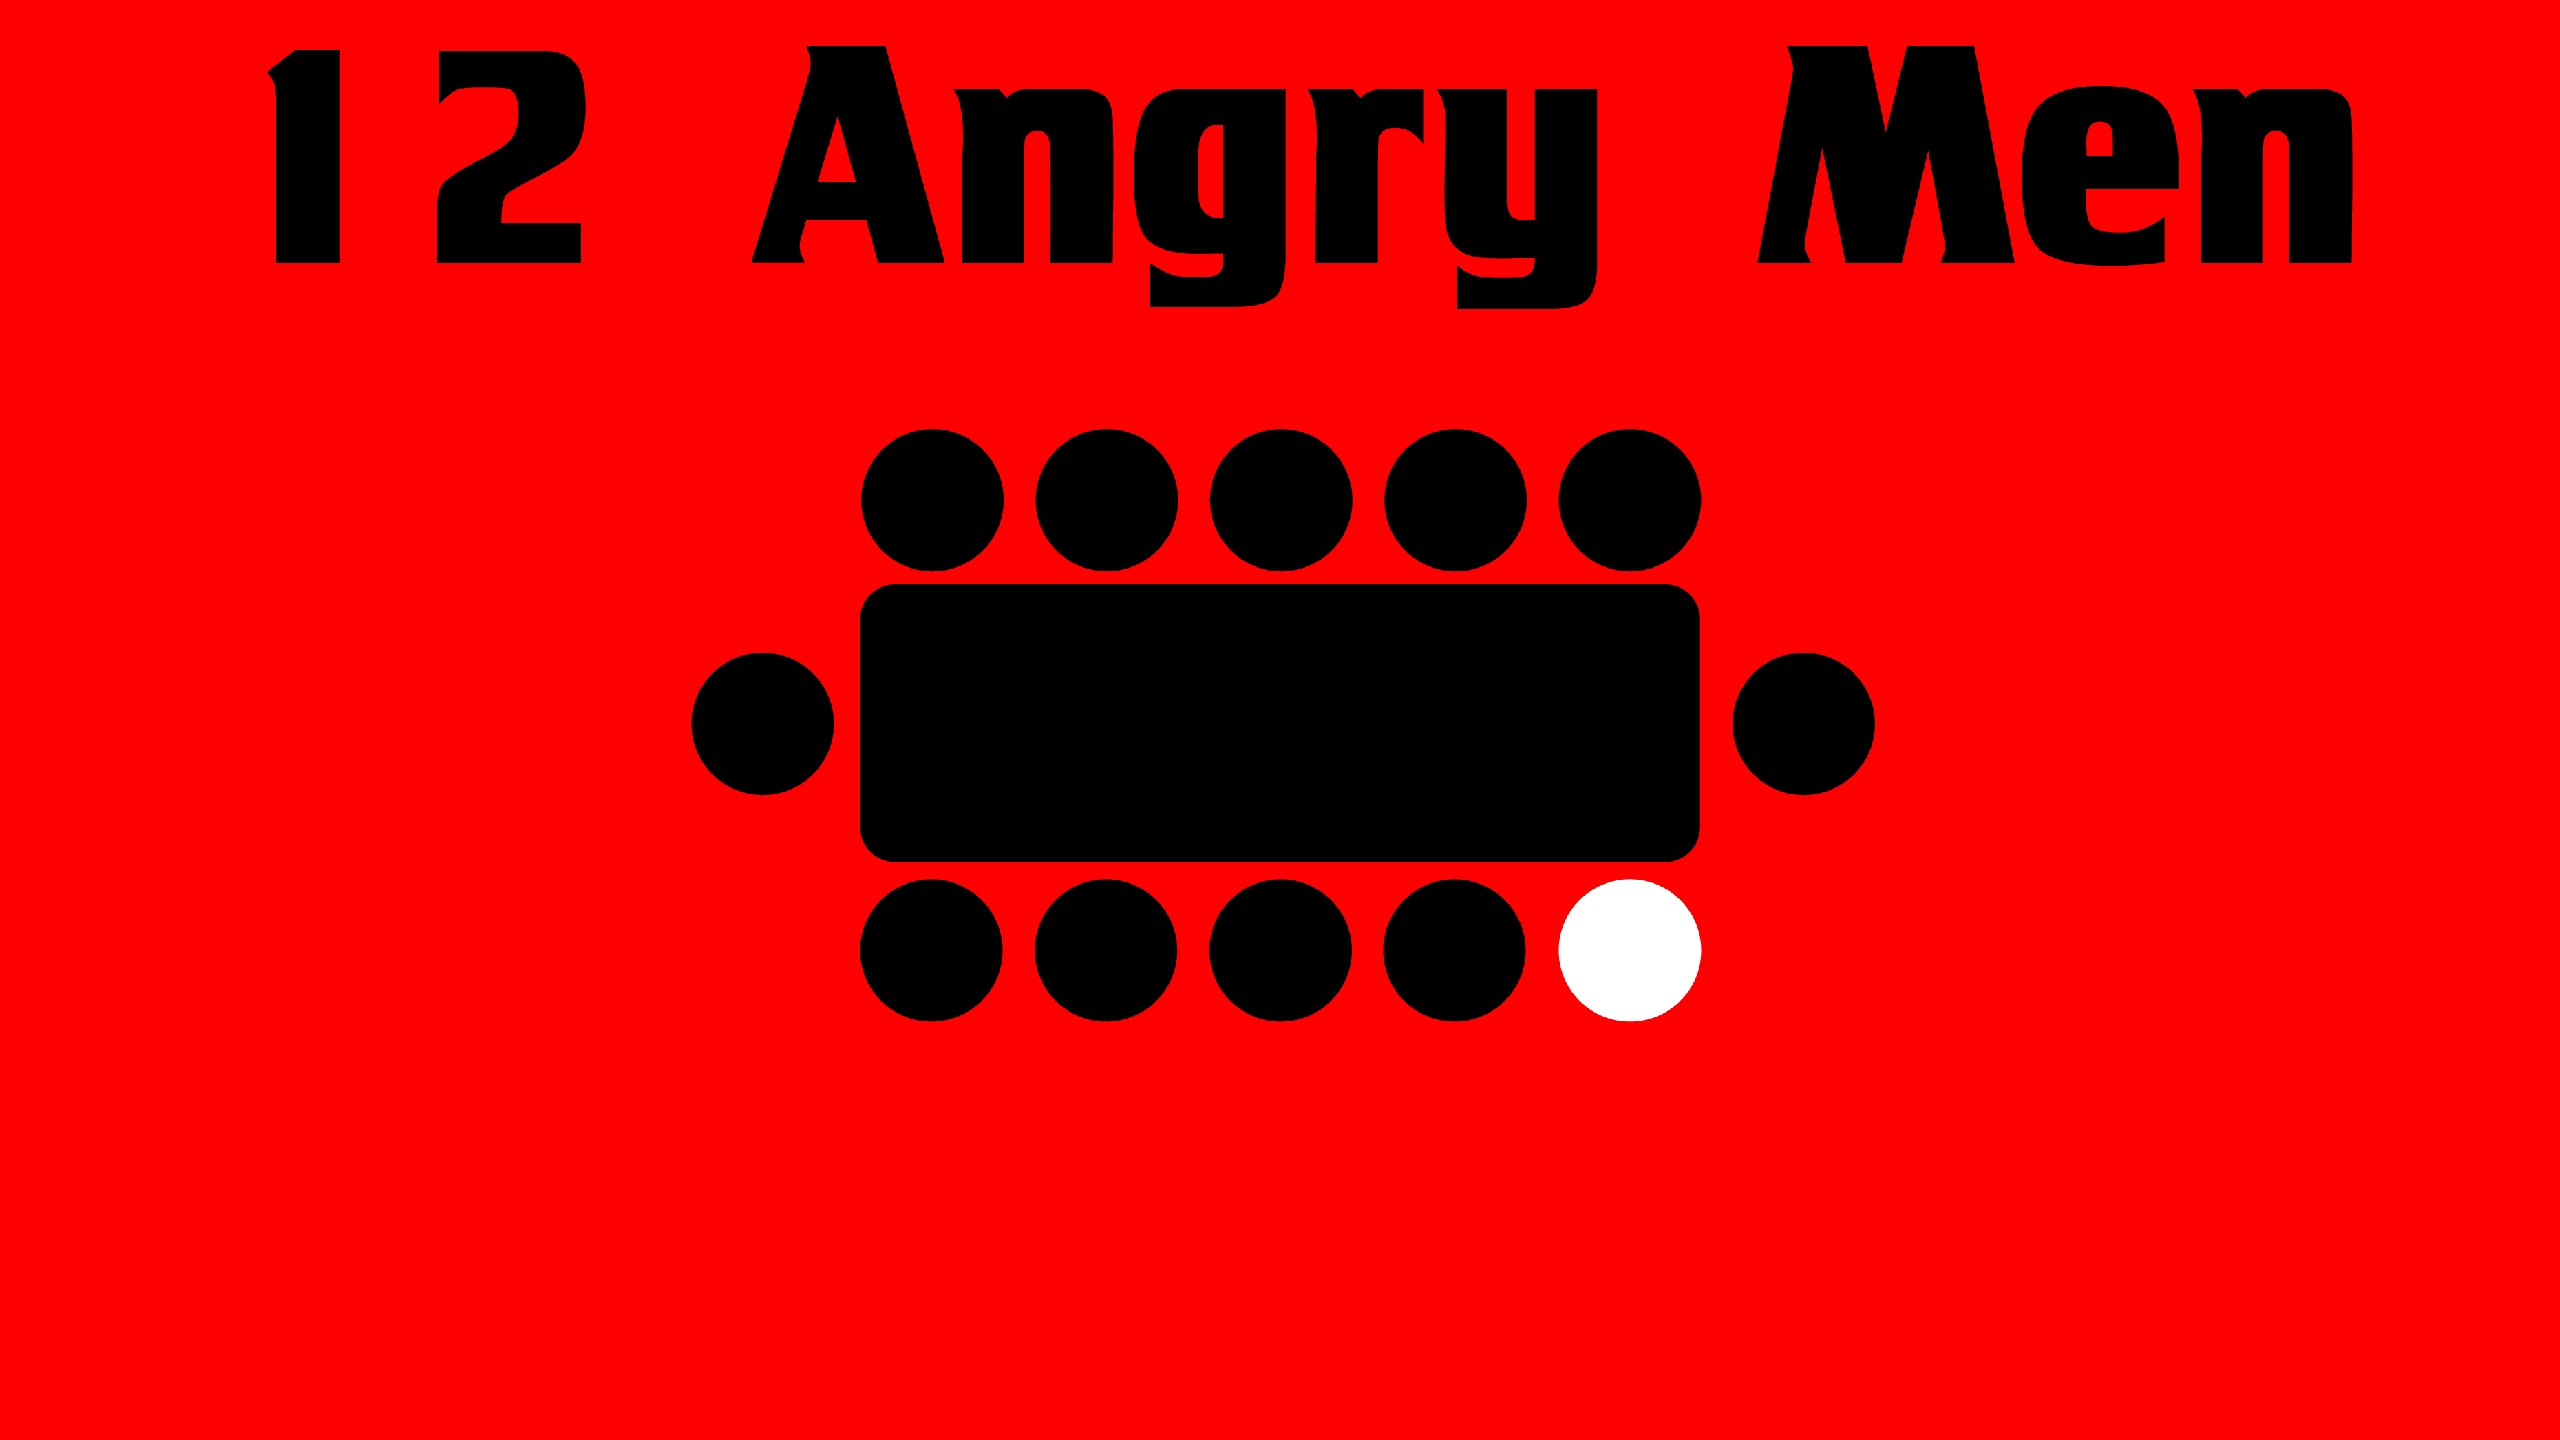 12 Angry Men Wallpaper